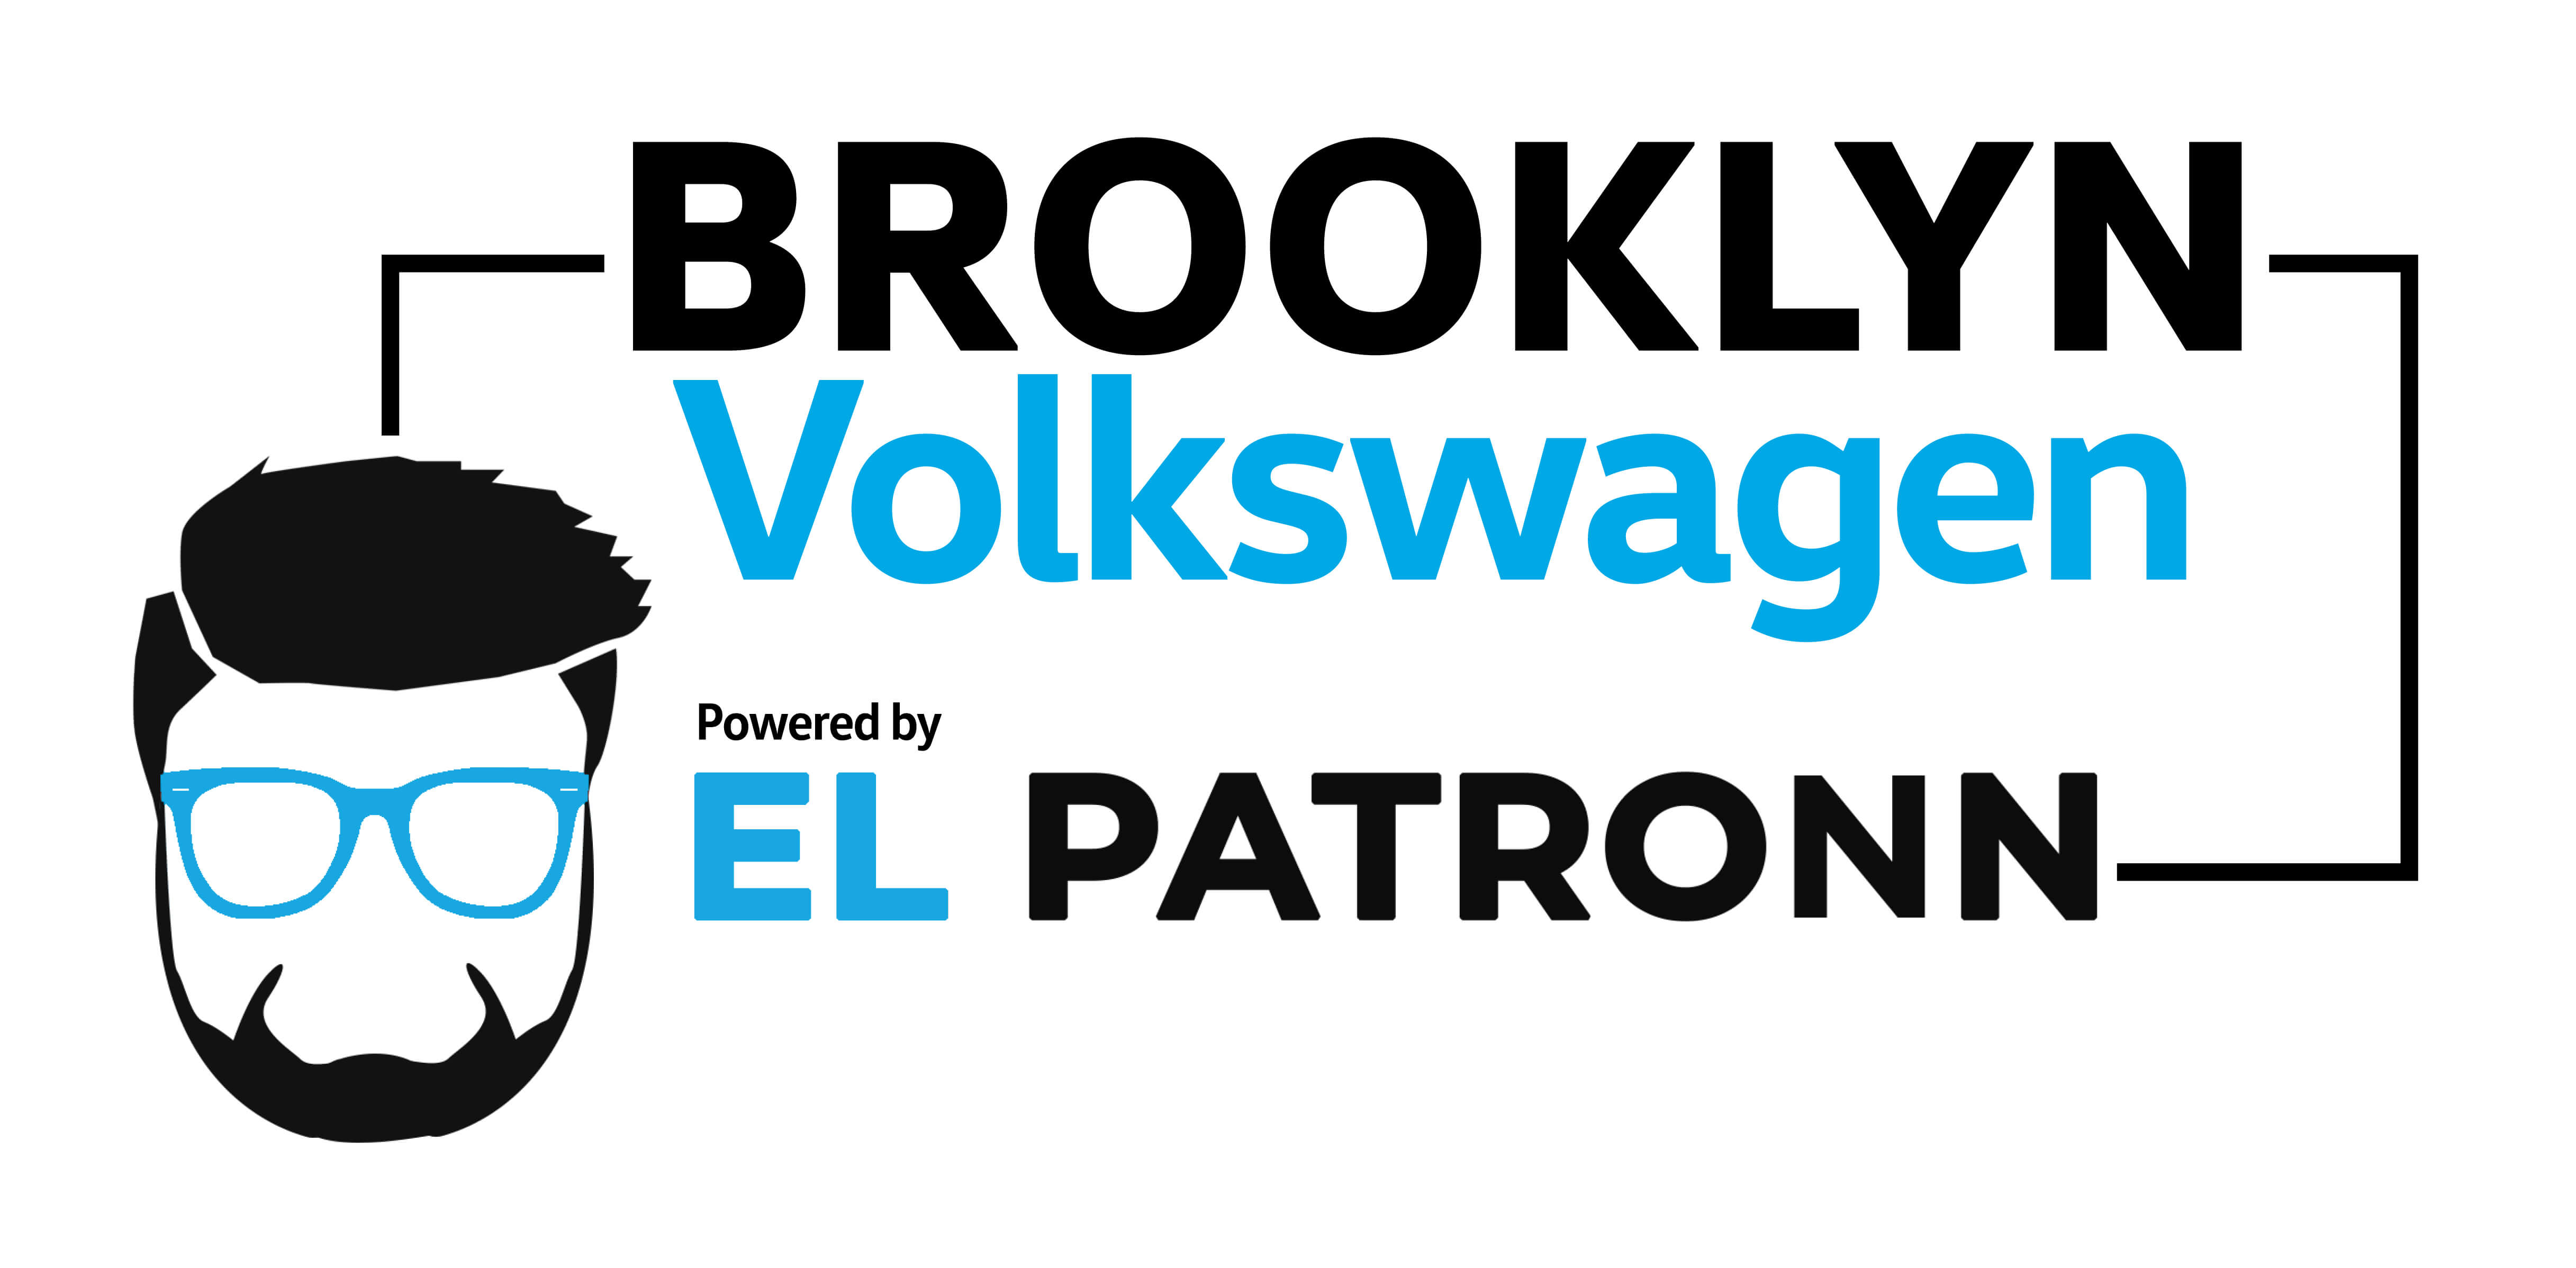 Brooklyn Volkswagen